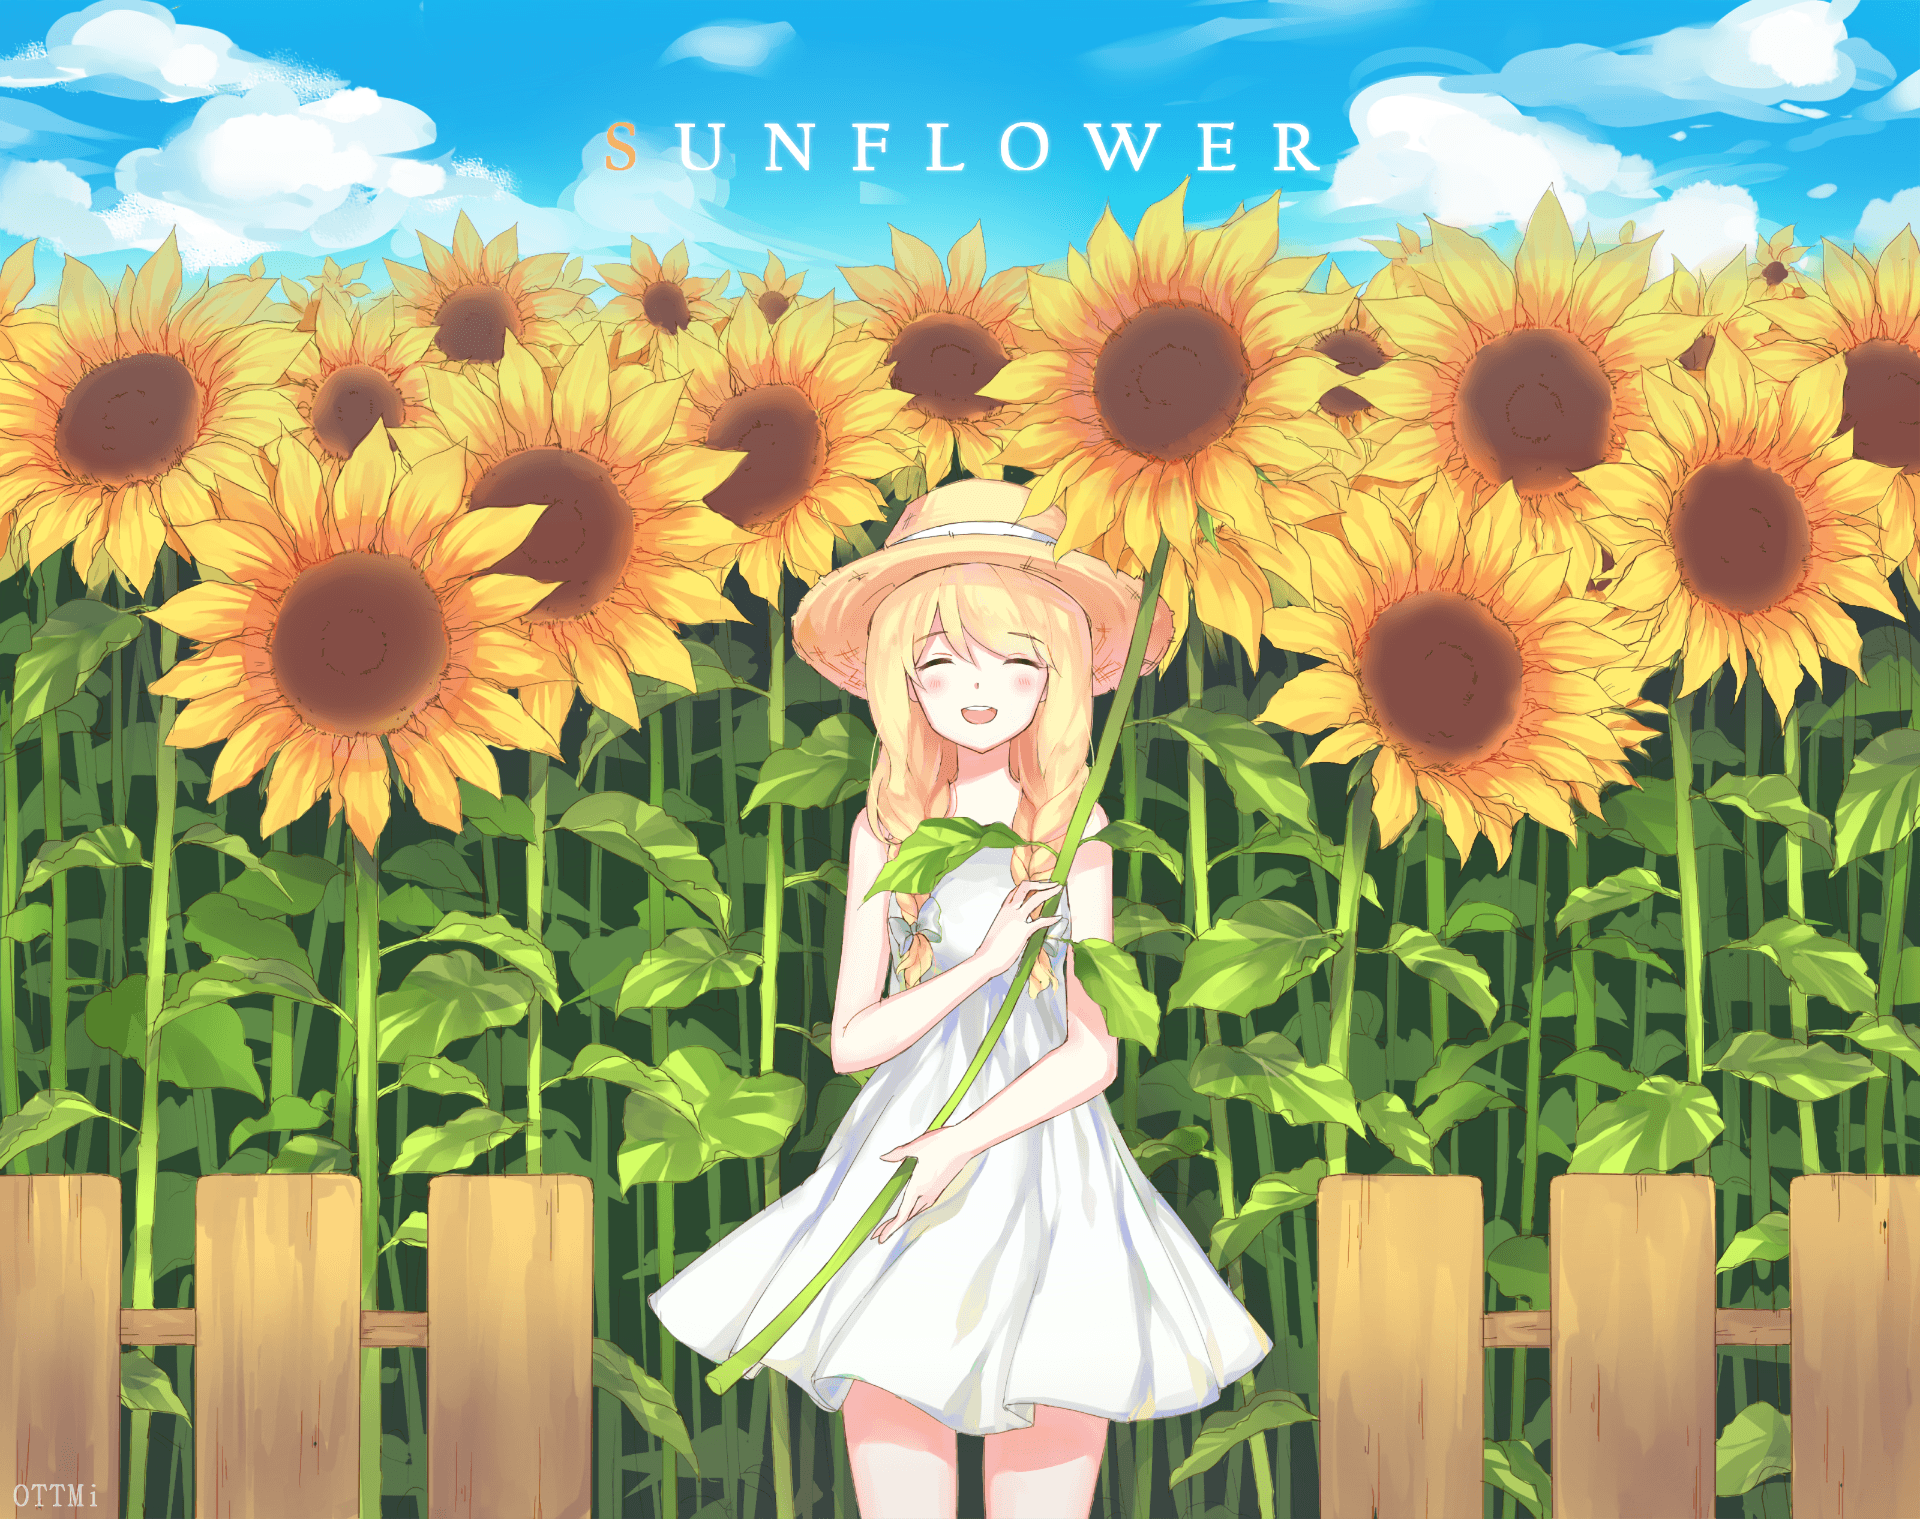 Sunflower Anime Wallpaper Free Sunflower Anime Background